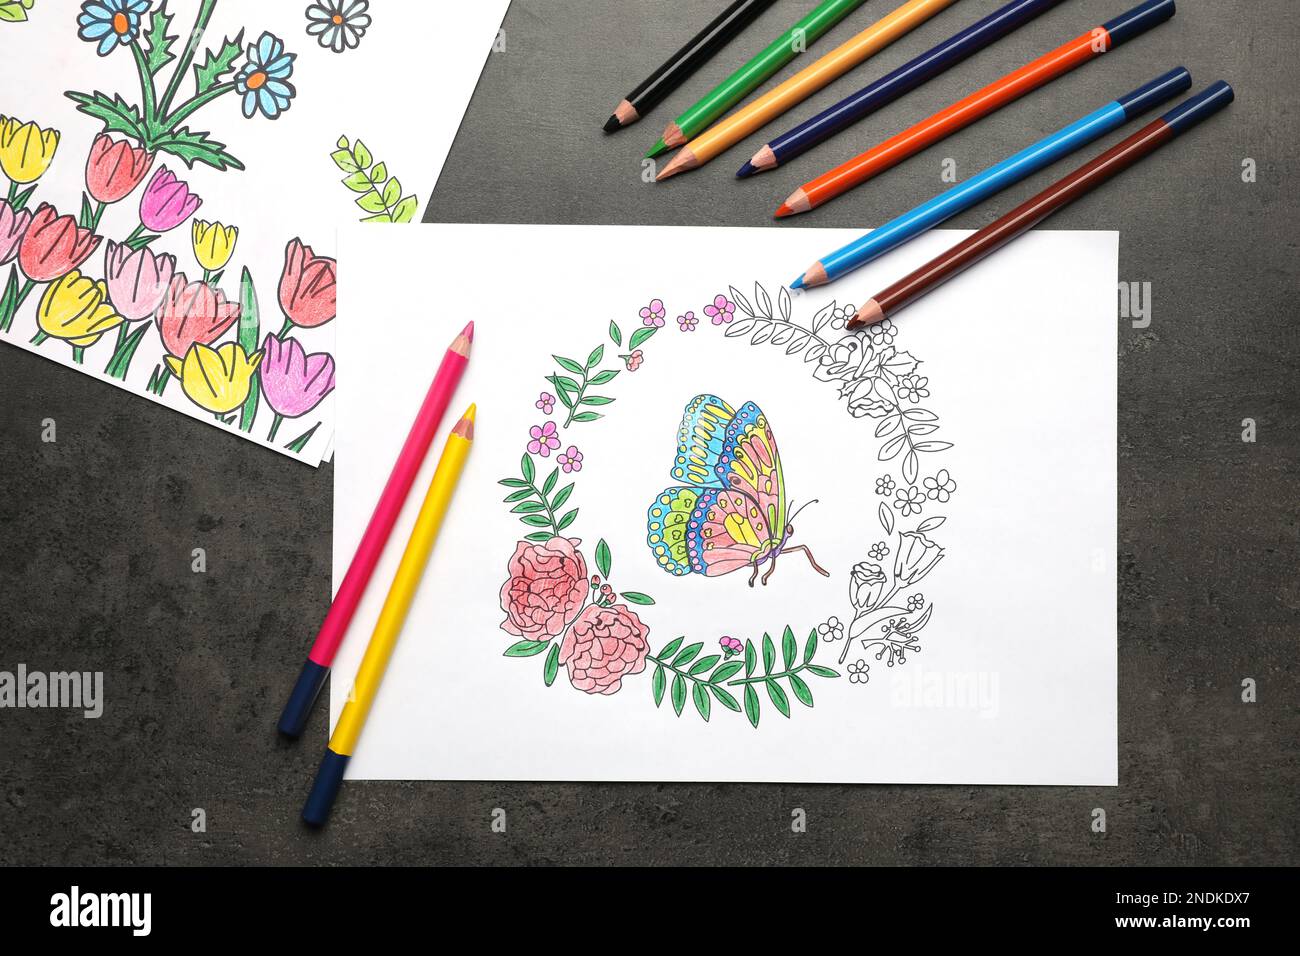 Pages de coloriage avec dessins d'enfants et jeu de crayons sur table grise, plat Banque D'Images